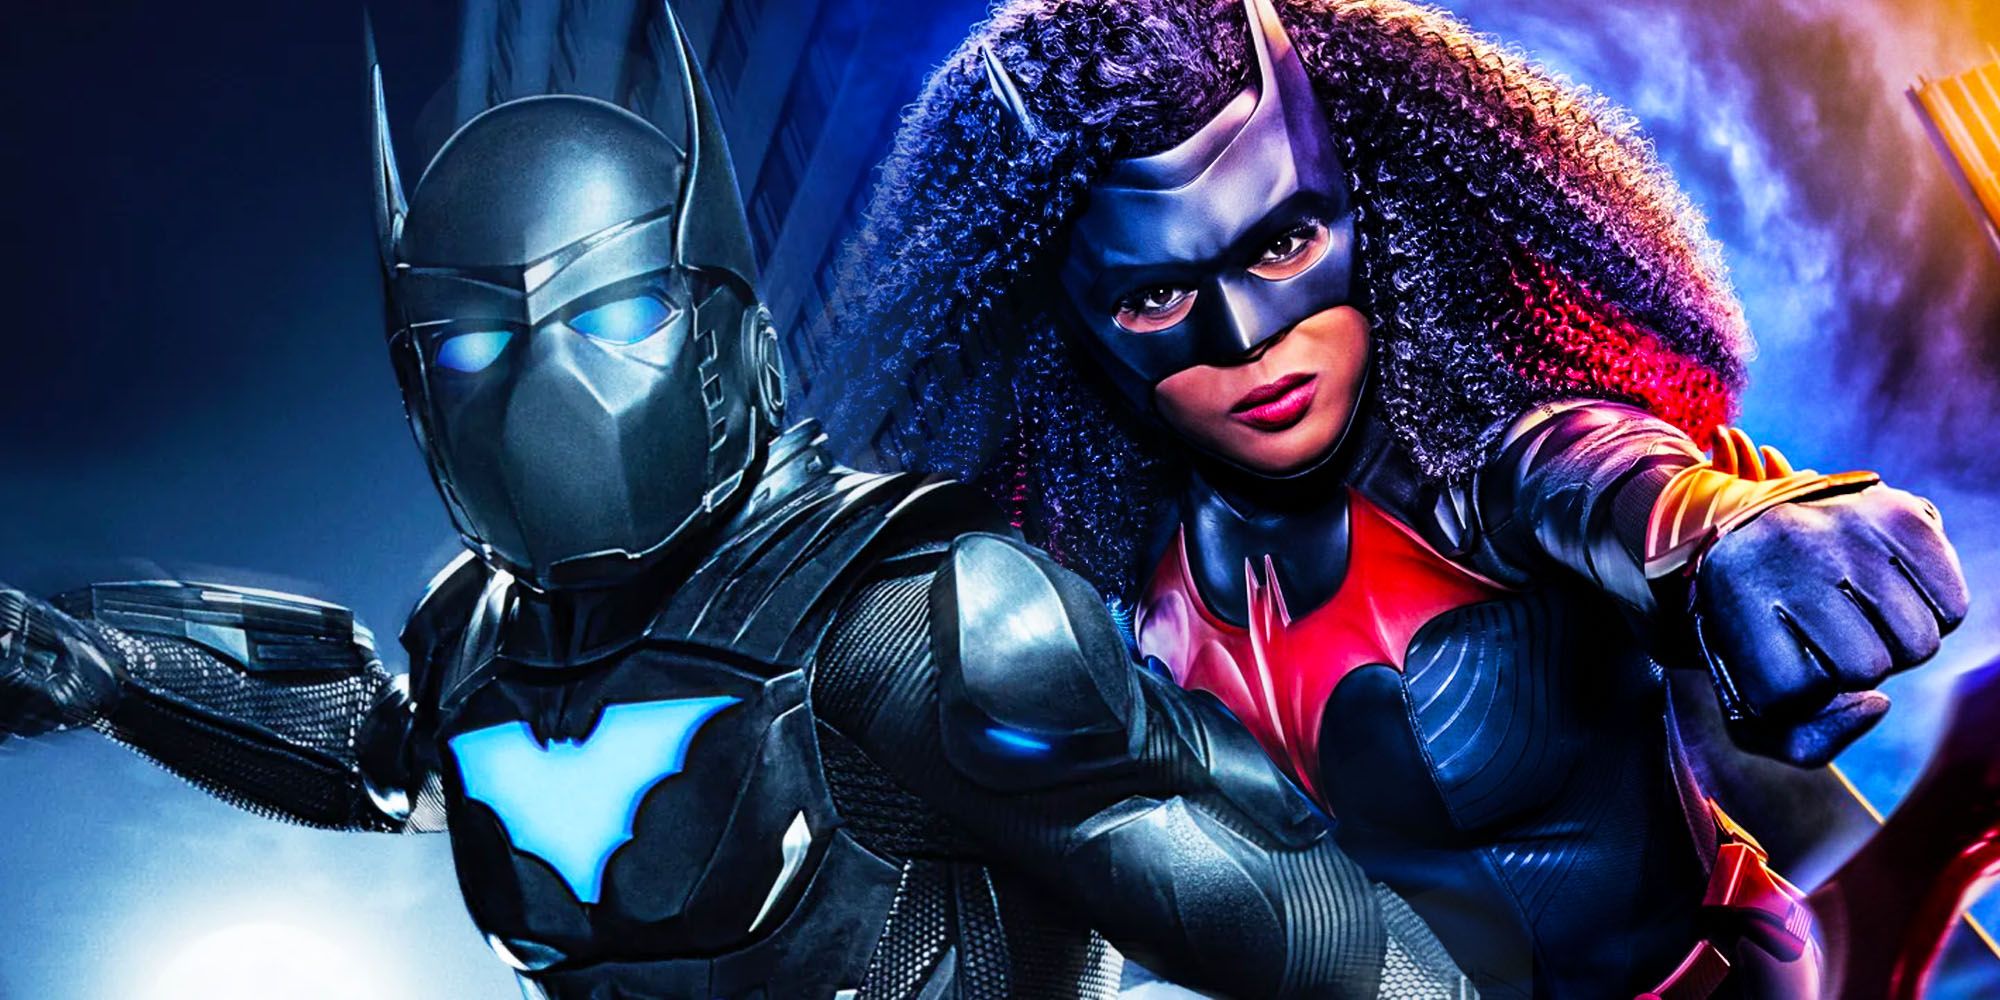 Actualizaciones e información de la temporada 4 de Batwoman: ¿sucederá?